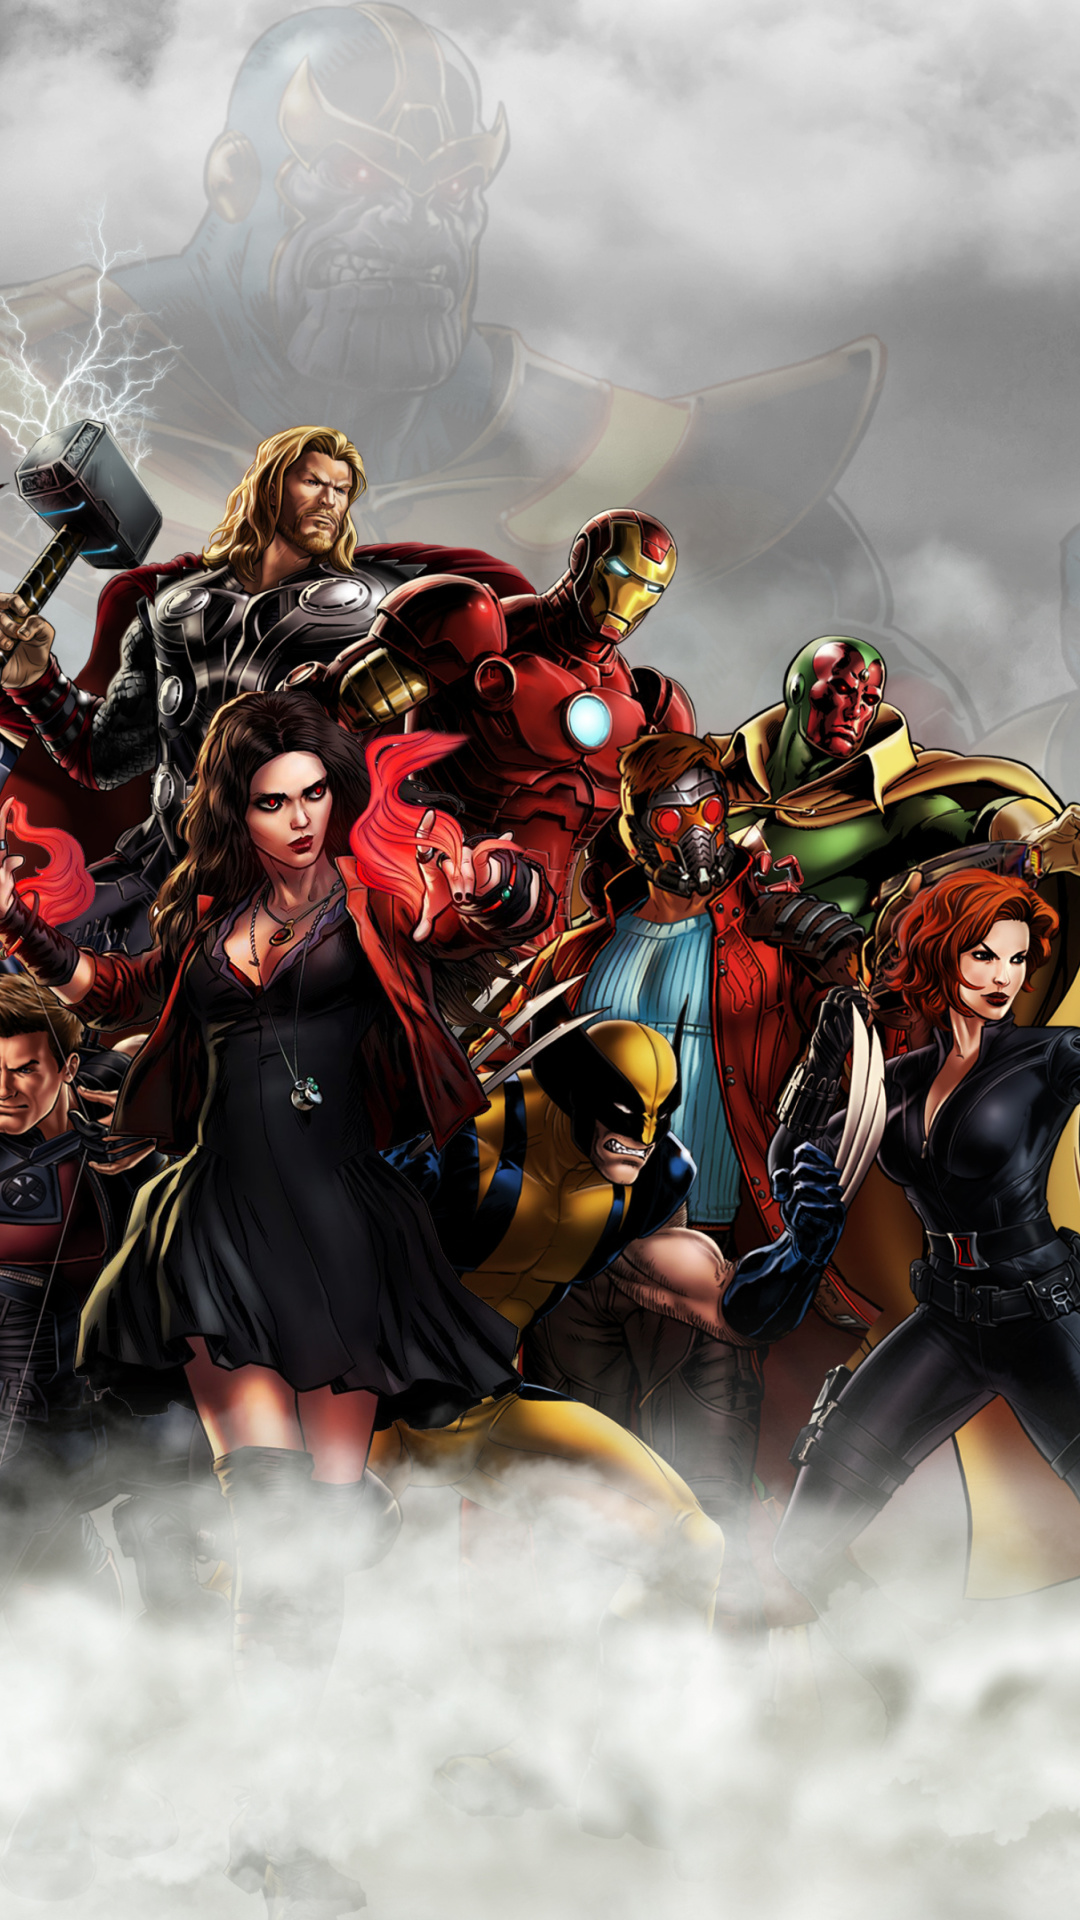 Avengers Infinity War 2018 wallpaper 1080x1920